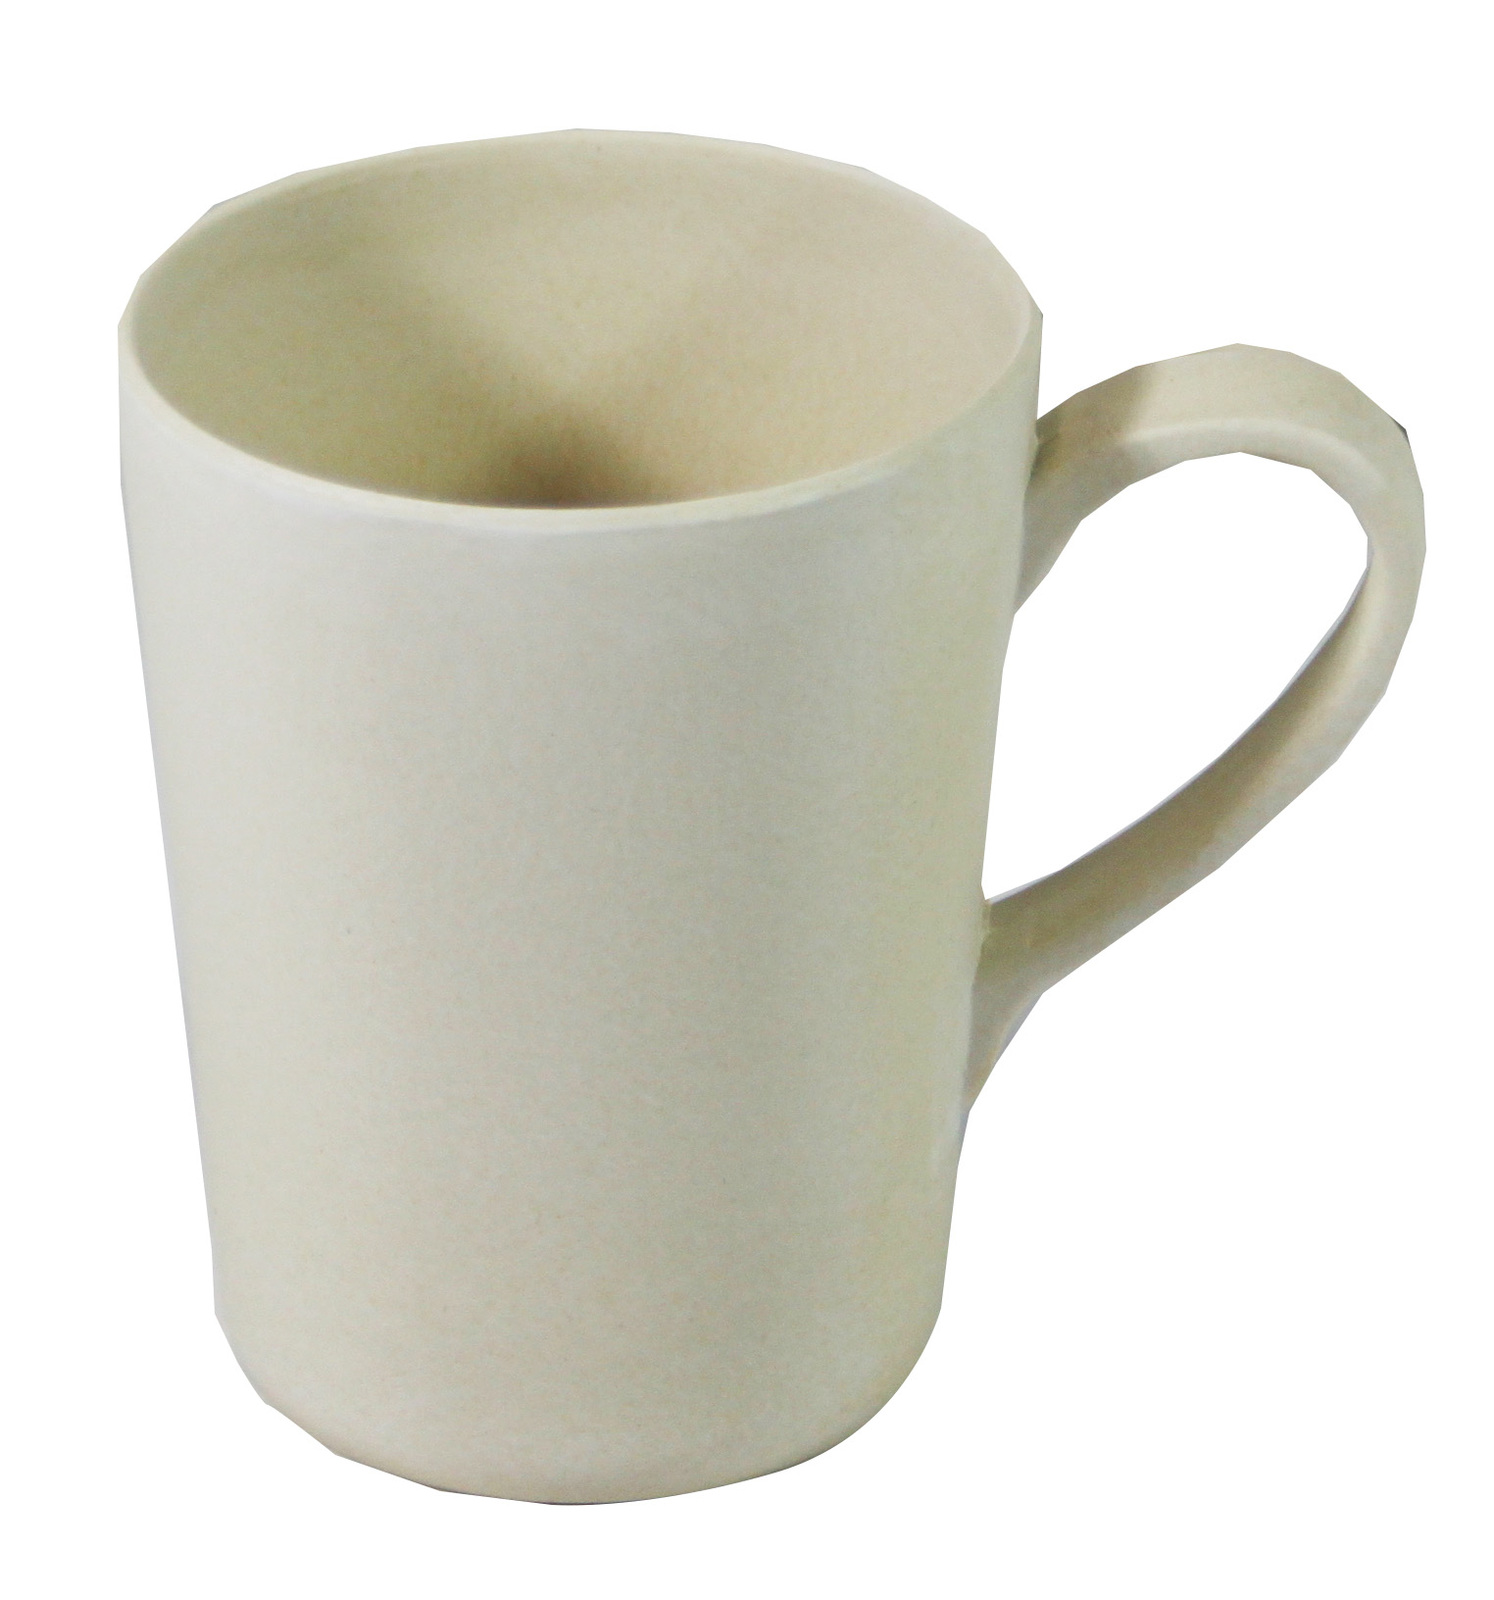 Bamboo Crockery Natural - Mug With Handle 365ml